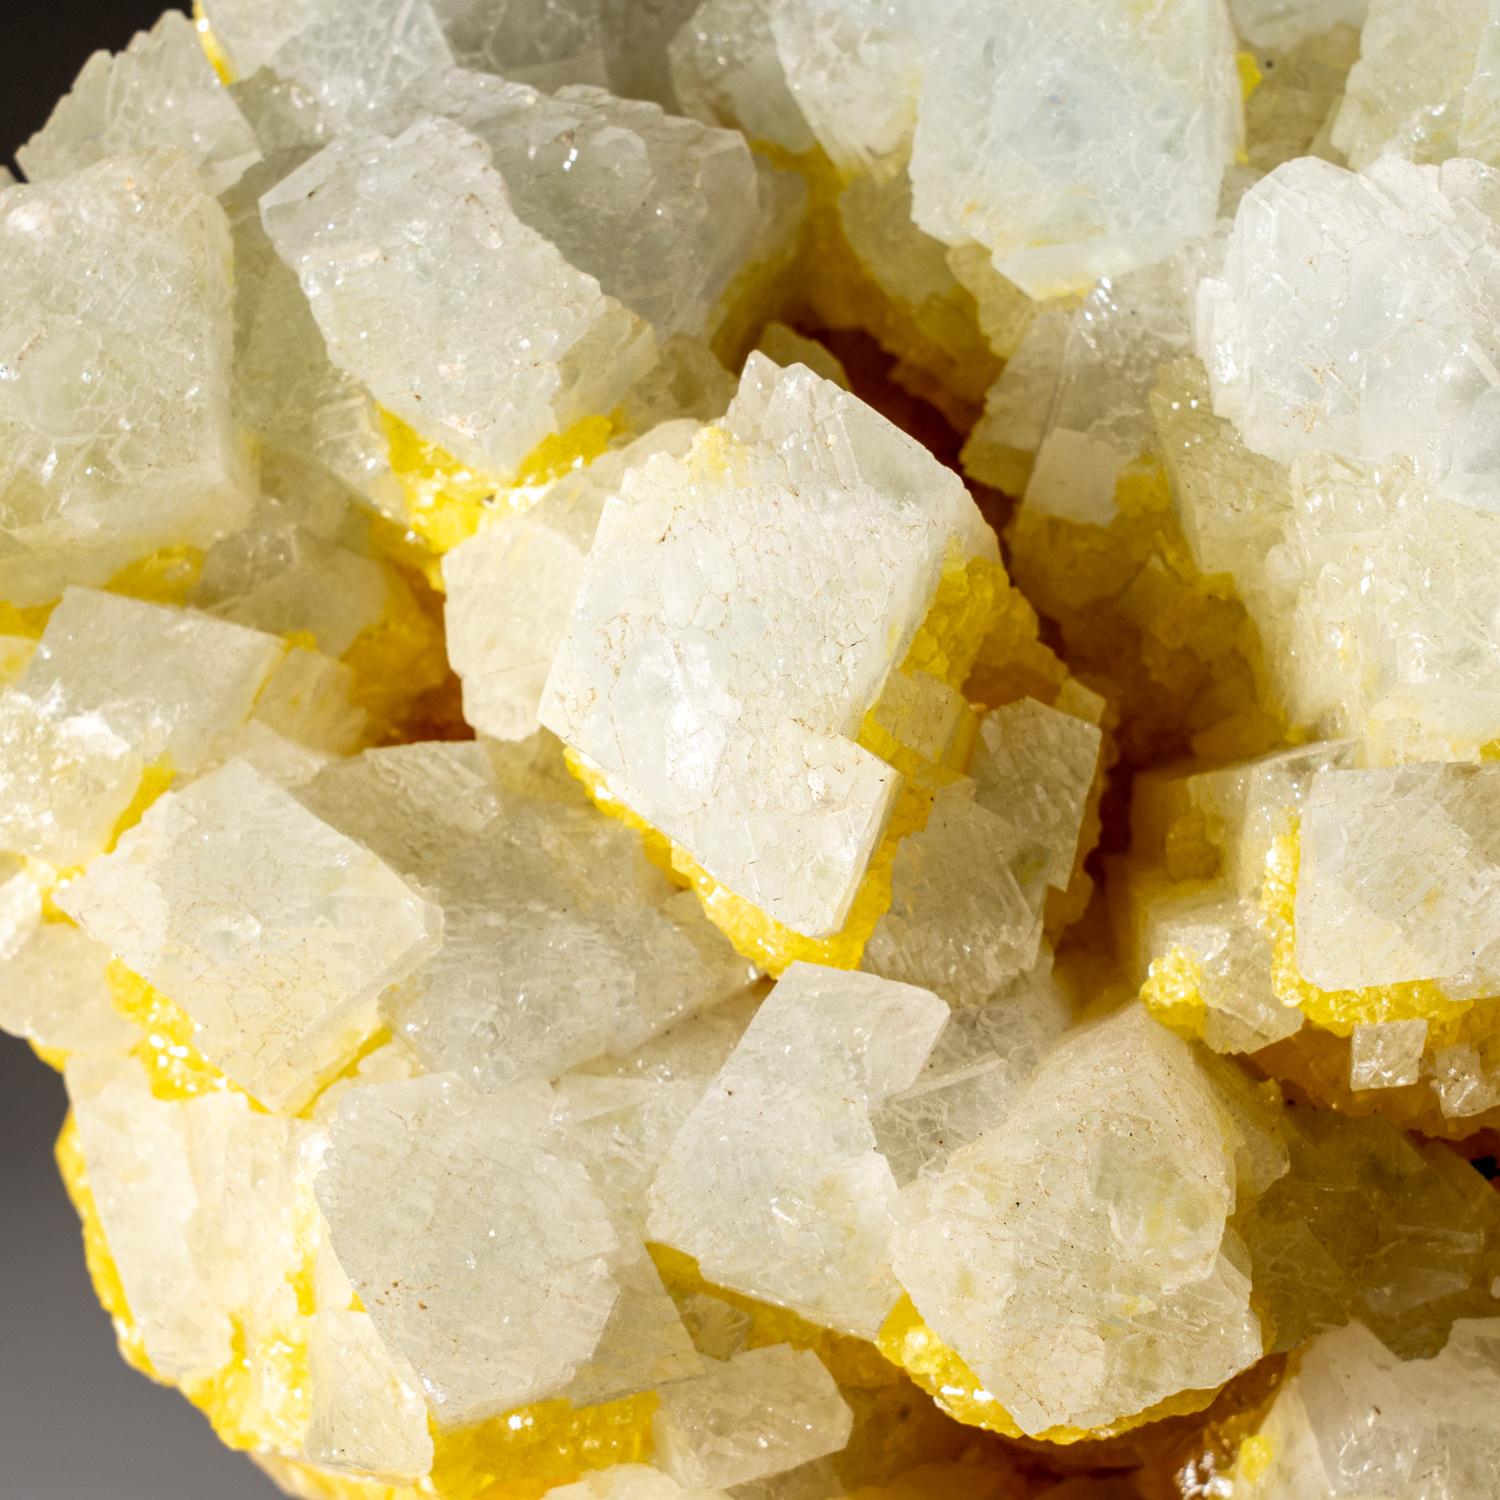 Aus der Mine La Grasta, Delia, Provinz Caltanissetta, Sizilien, Italien

Farblose, durchscheinende, prismatische Coelestin-Kristalle mit glänzenden Kristallflächen, auf kristallisiertem, durchscheinendem, gelbem Schwefel.


Gewicht: 4,7 lbs, Größe: